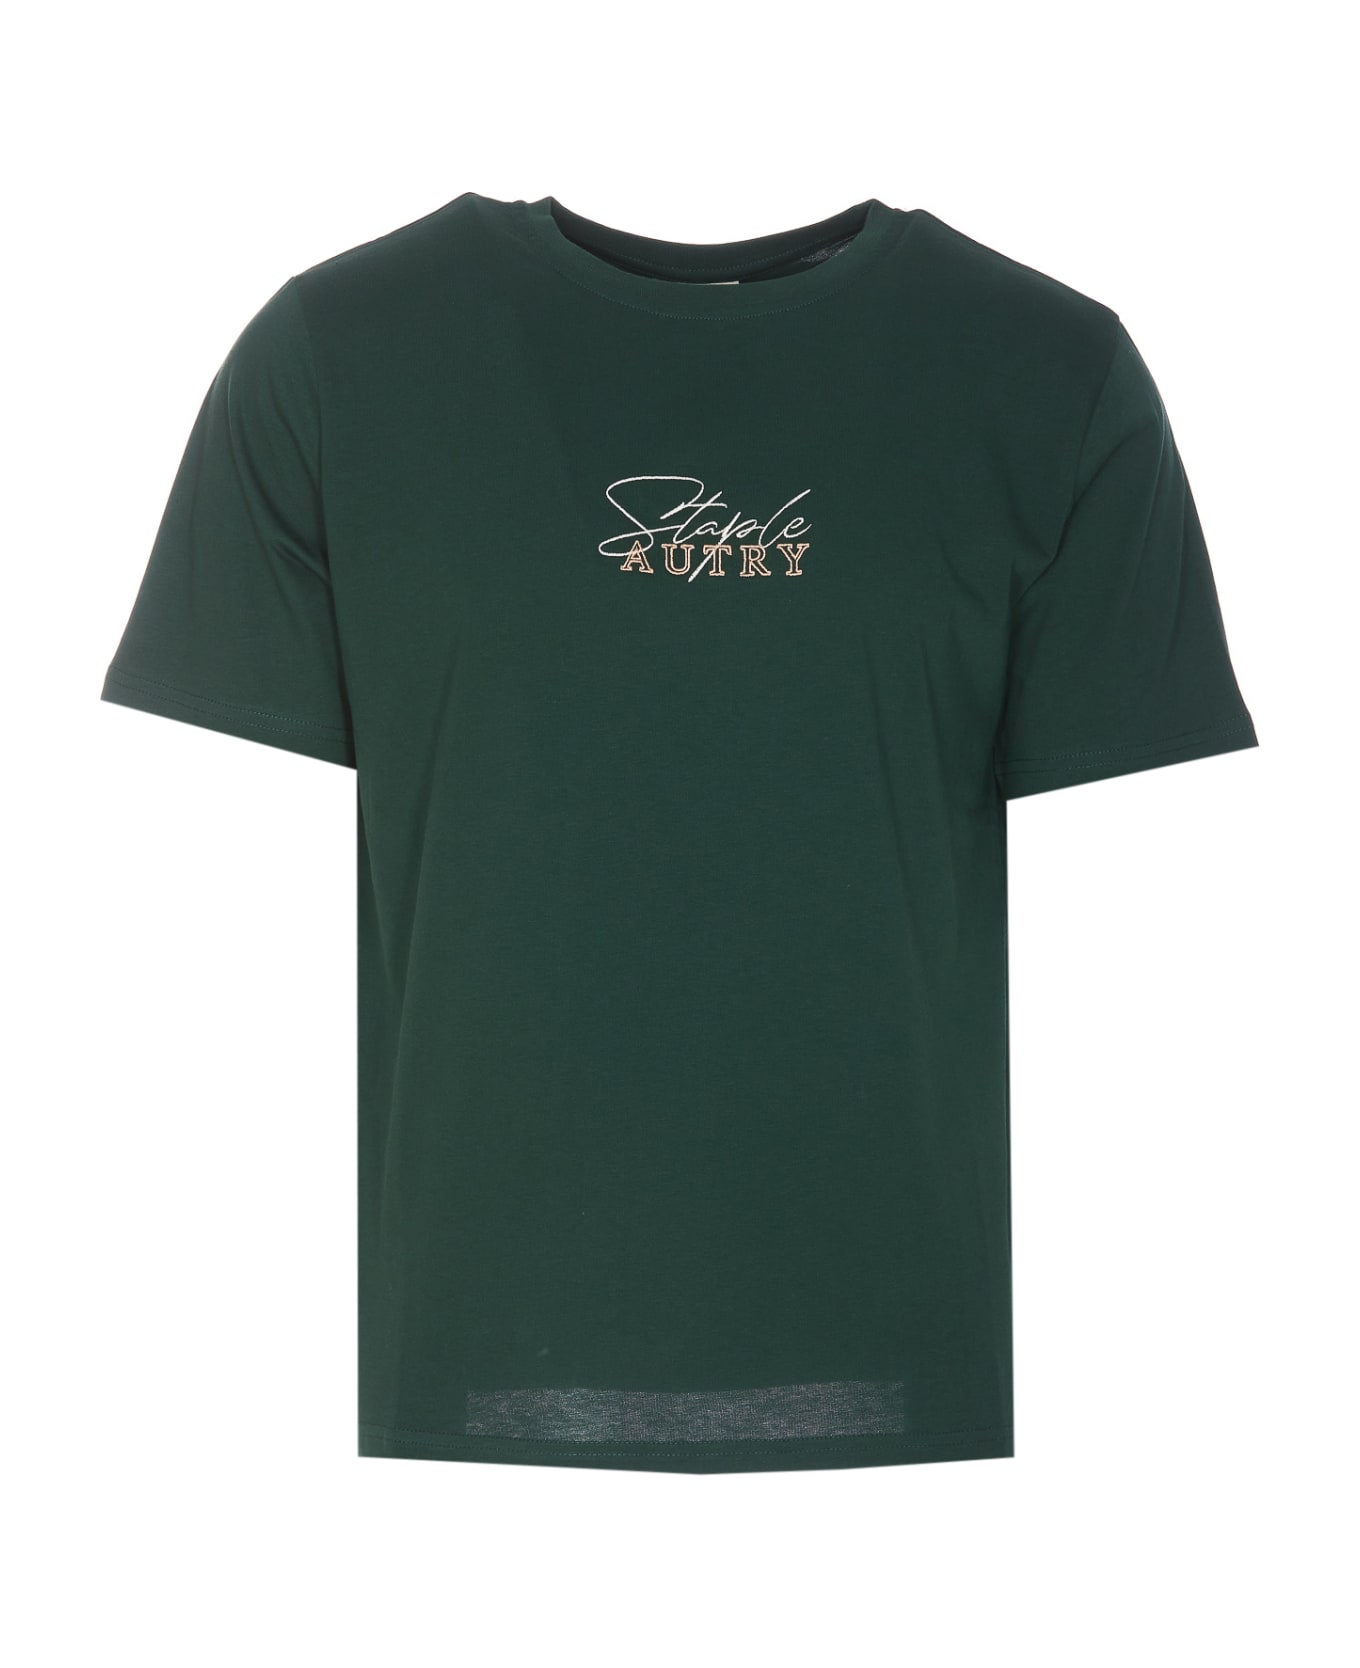 Autry Staple T-shirt - Green